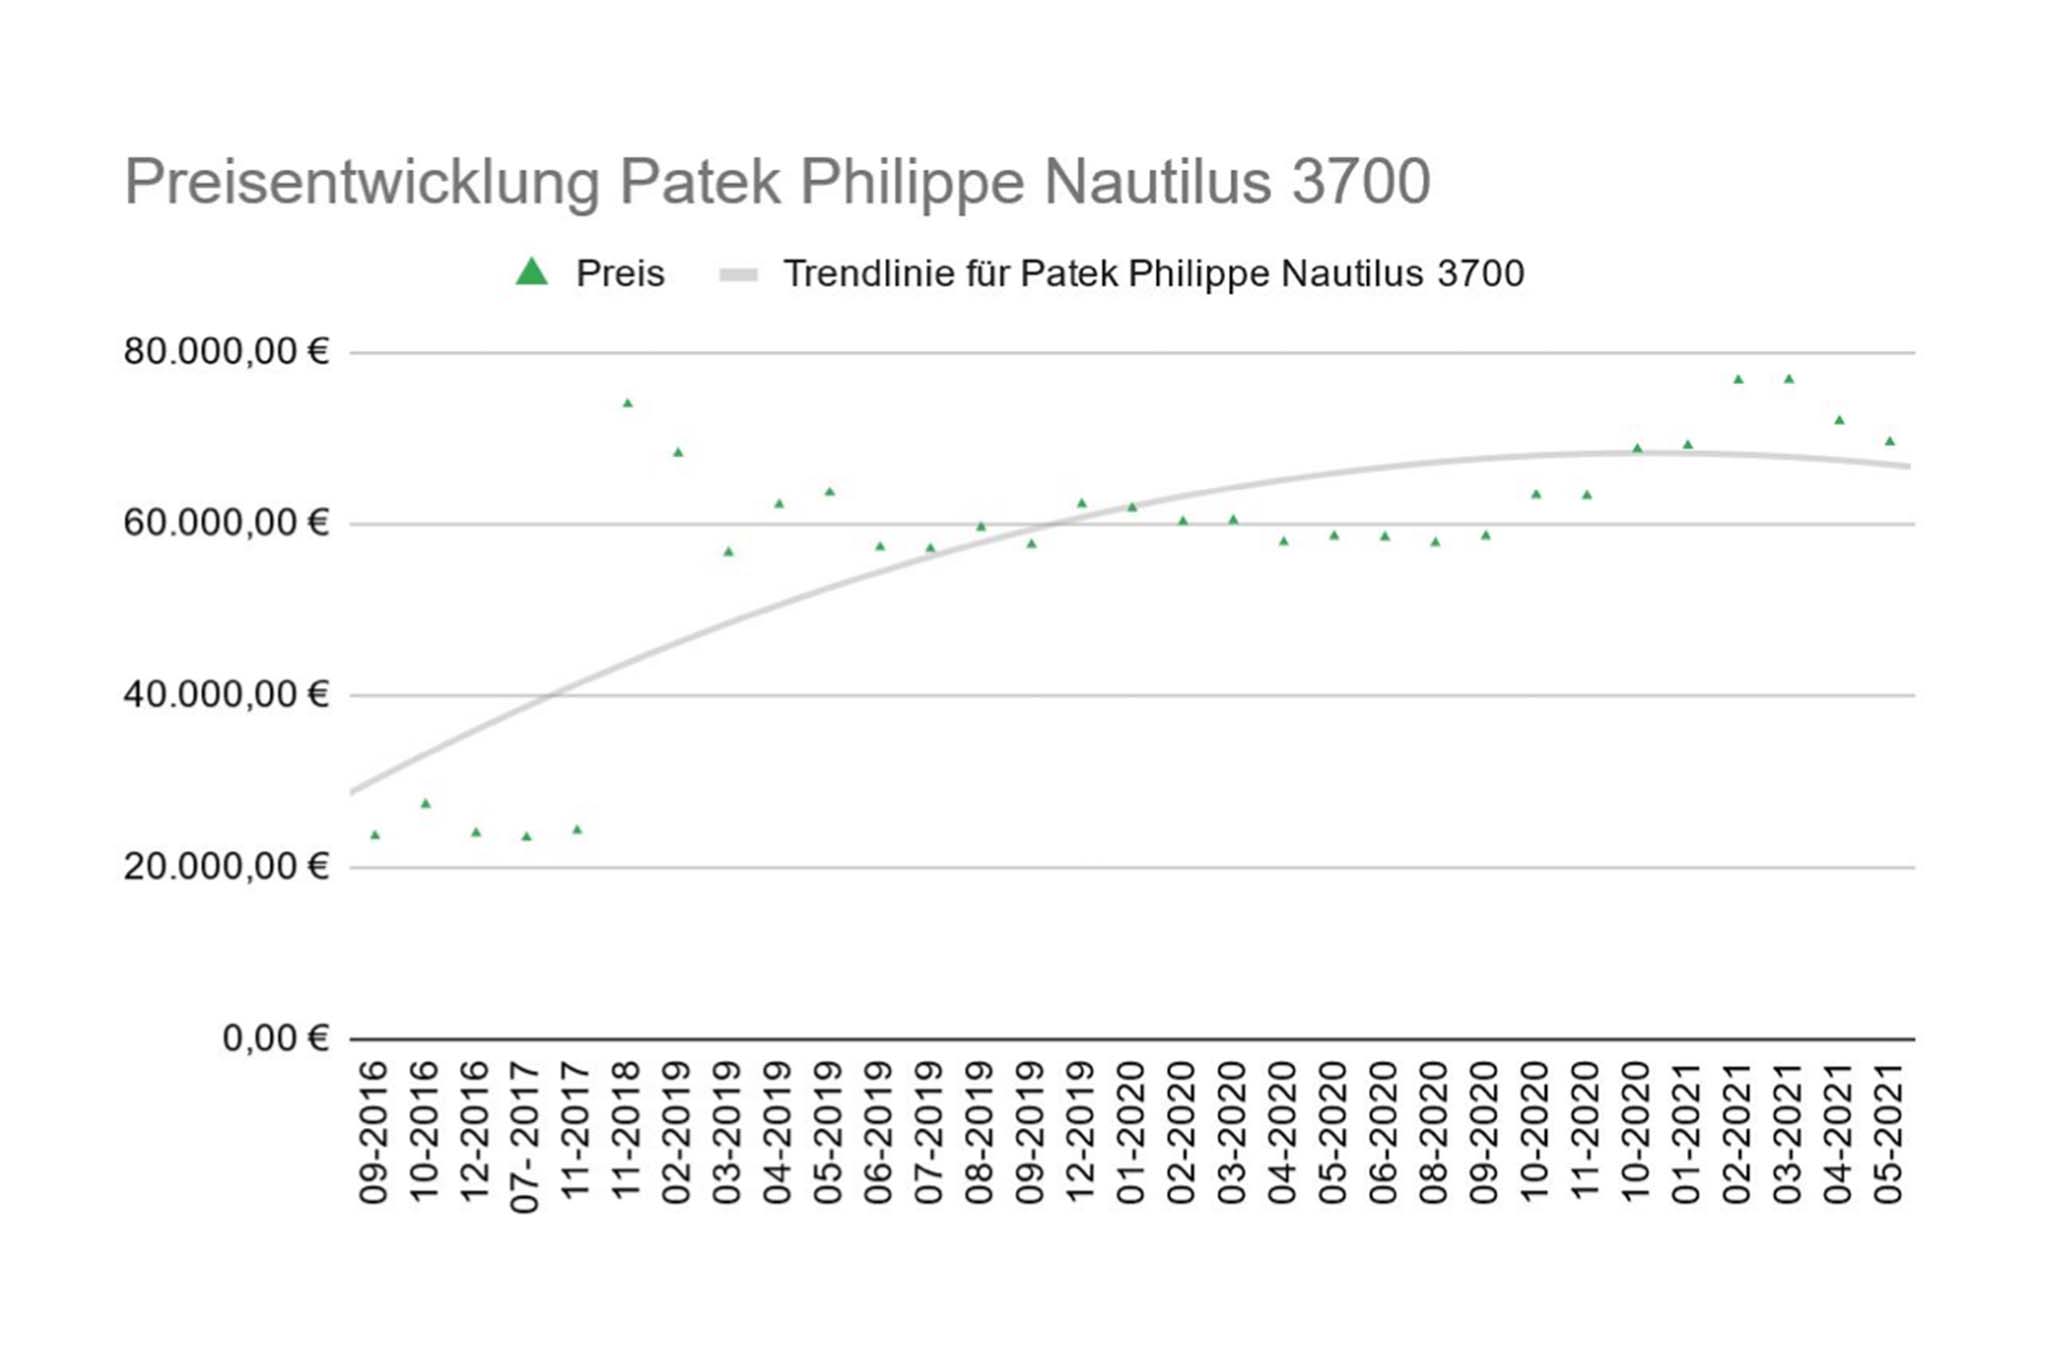 Preisentwicklung Patek Philippe Nautilus 3700